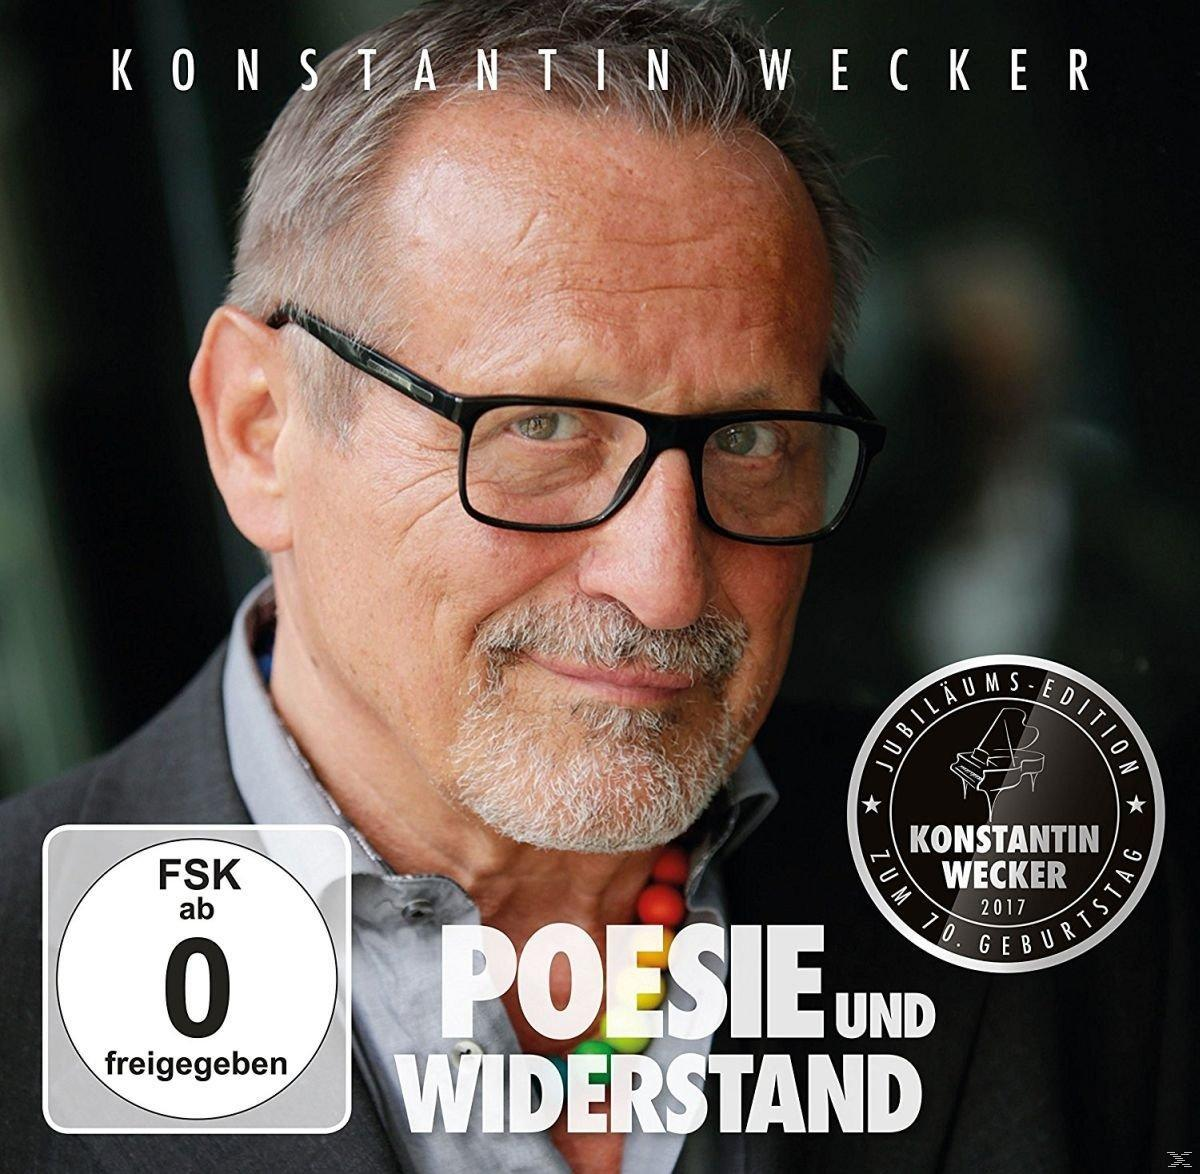 (limitie DVD) Widerstand Konstantin Poesie + - und - (CD Wecker